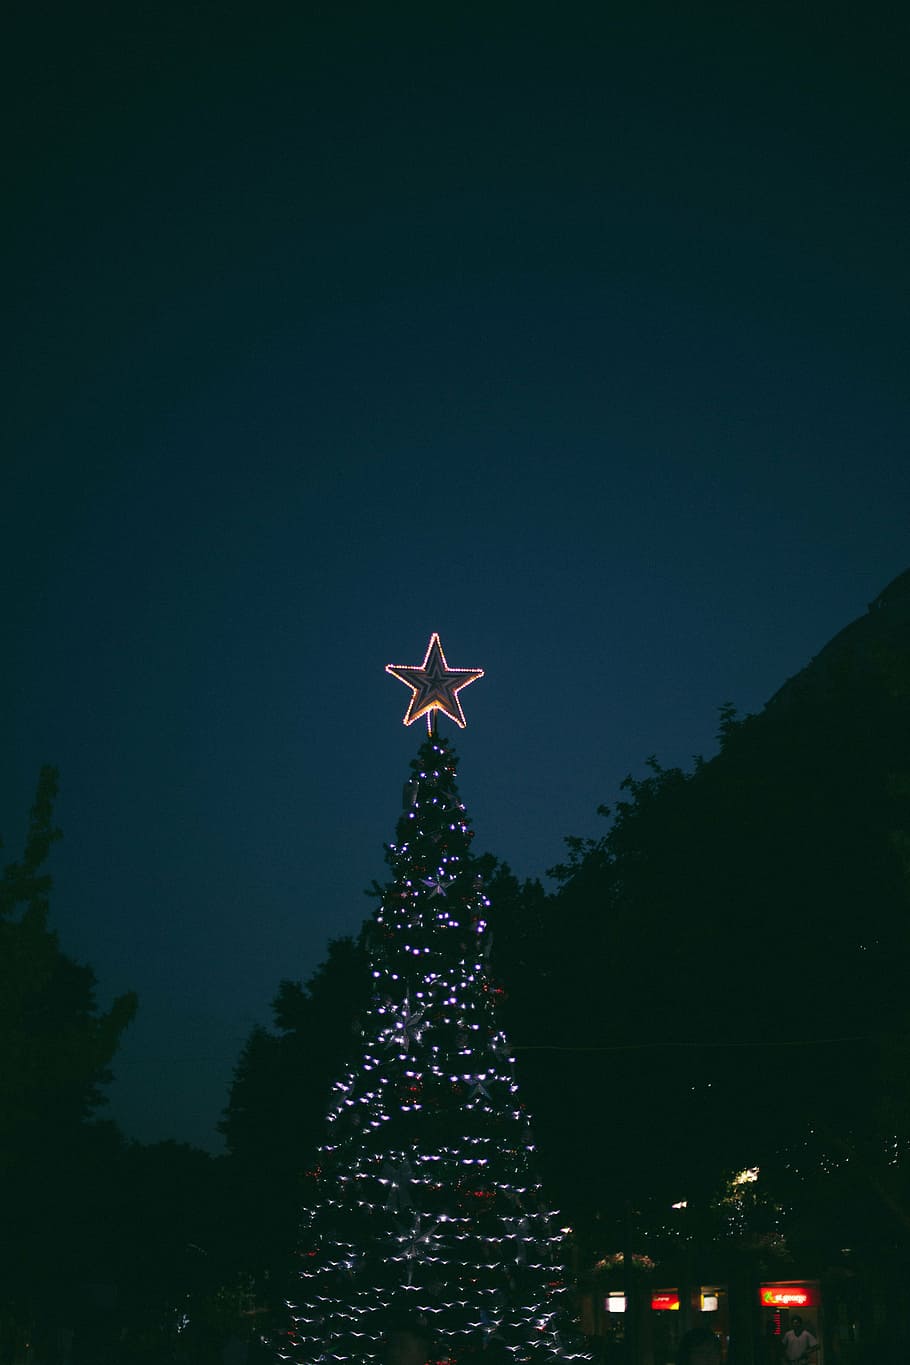 селективный, сфокусировать фотографию, включенный рождественский свет, ночь, Рождество, свет, за пределами, деревьями, растение, небо